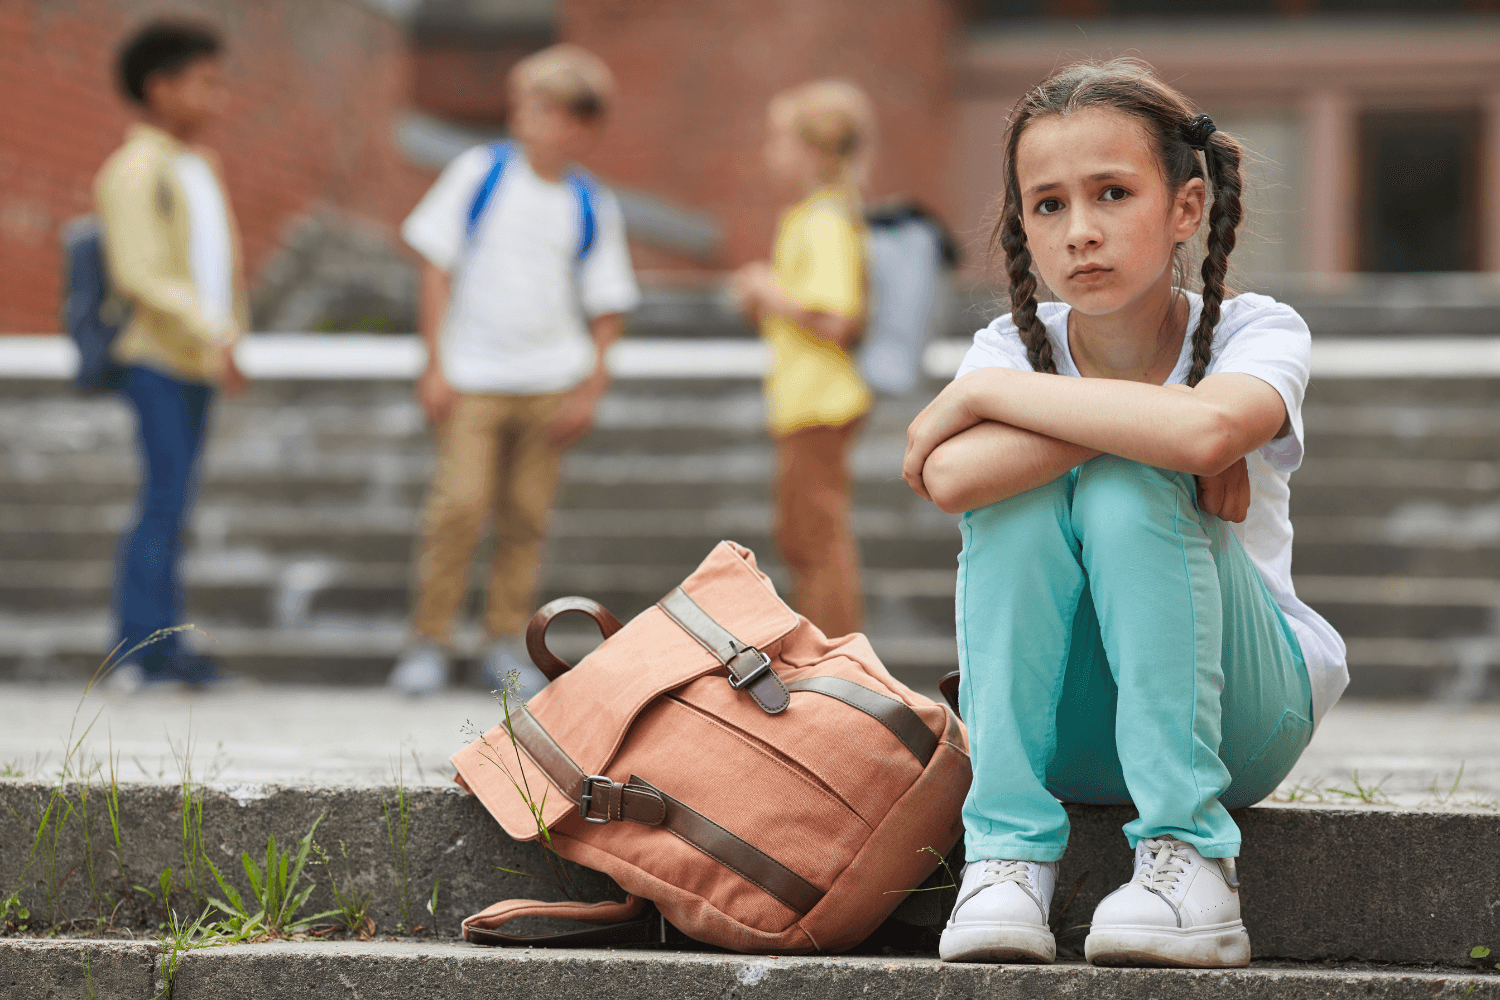 Phobie scolaire : 5 signes pour détecter la peur de l'école et aider votre enfant